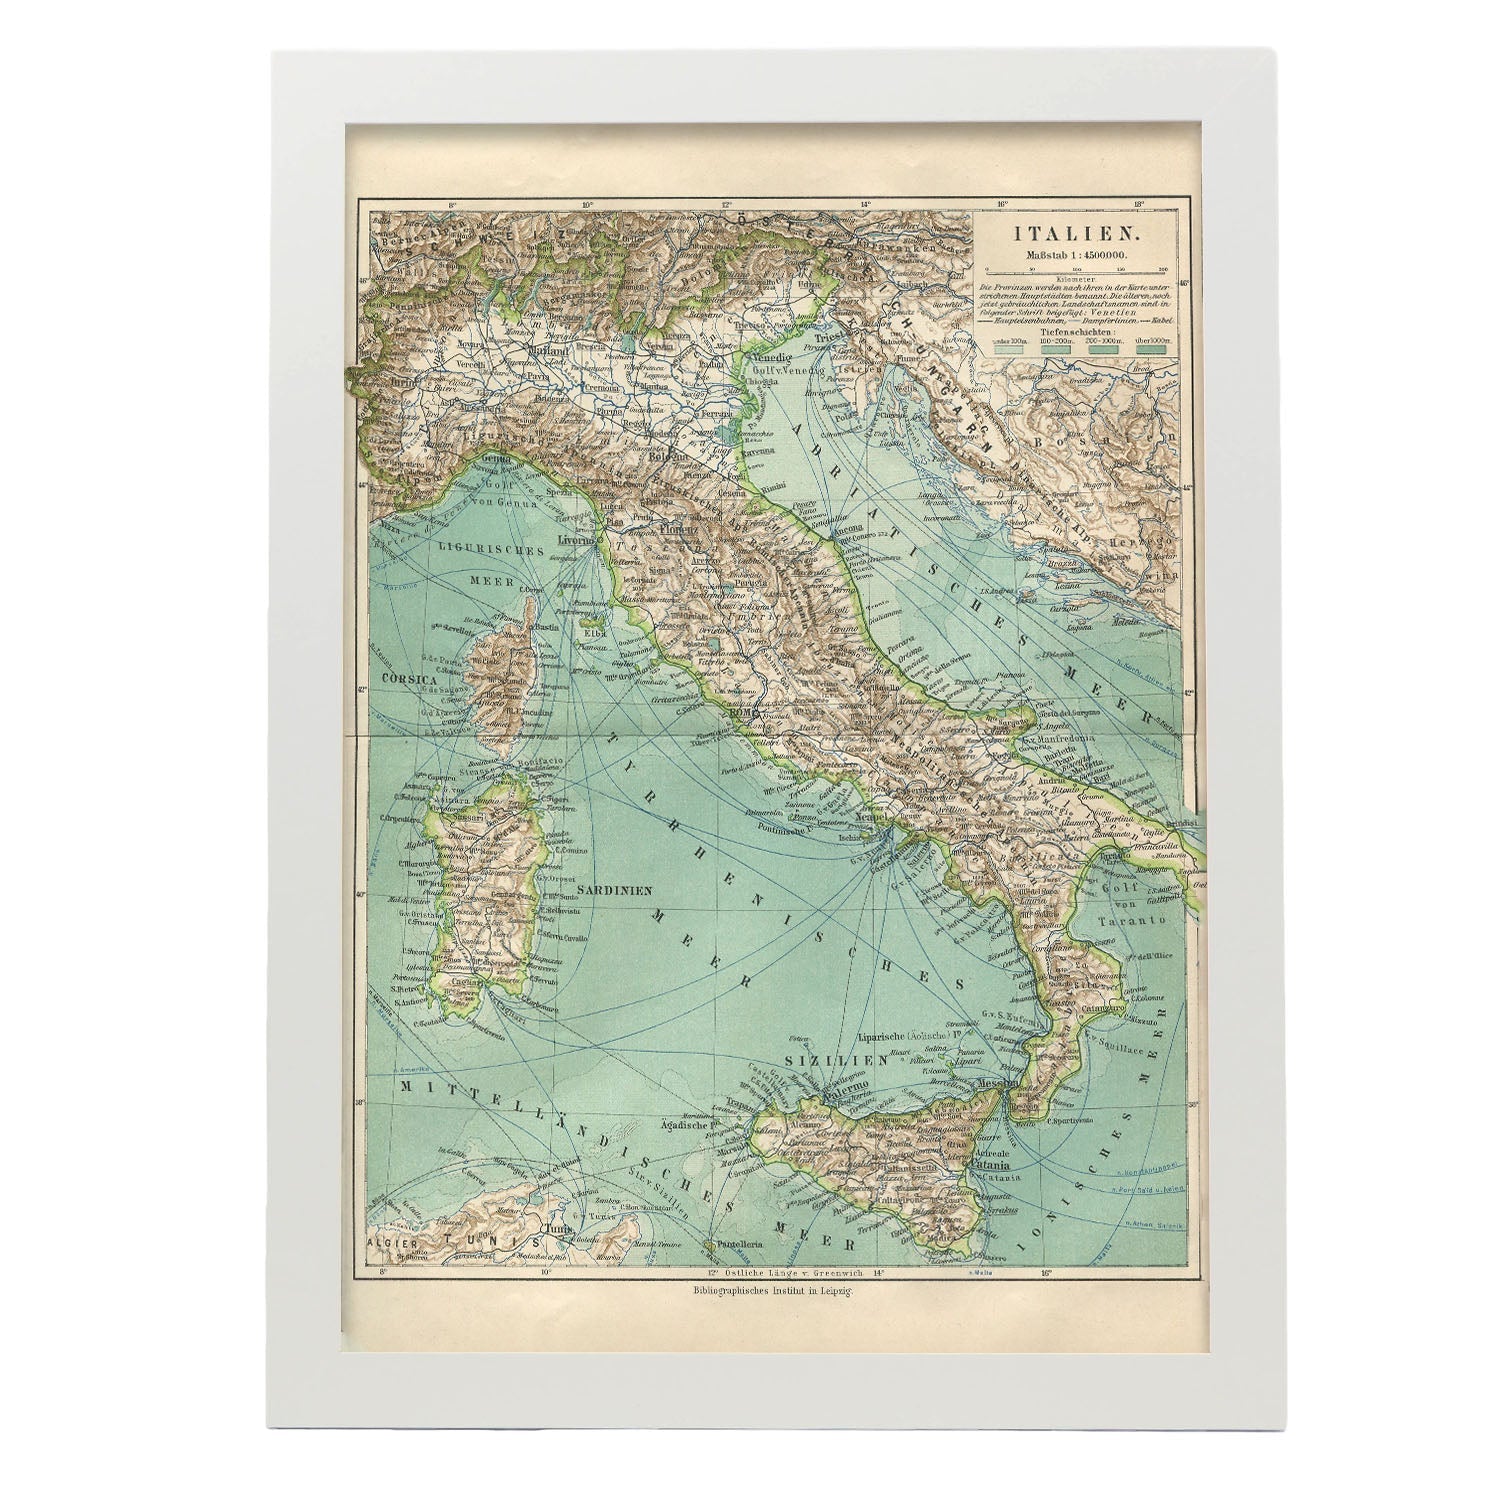 Vintage Map of Italy-Artwork-Nacnic-A3-Marco Blanco-Nacnic Estudio SL